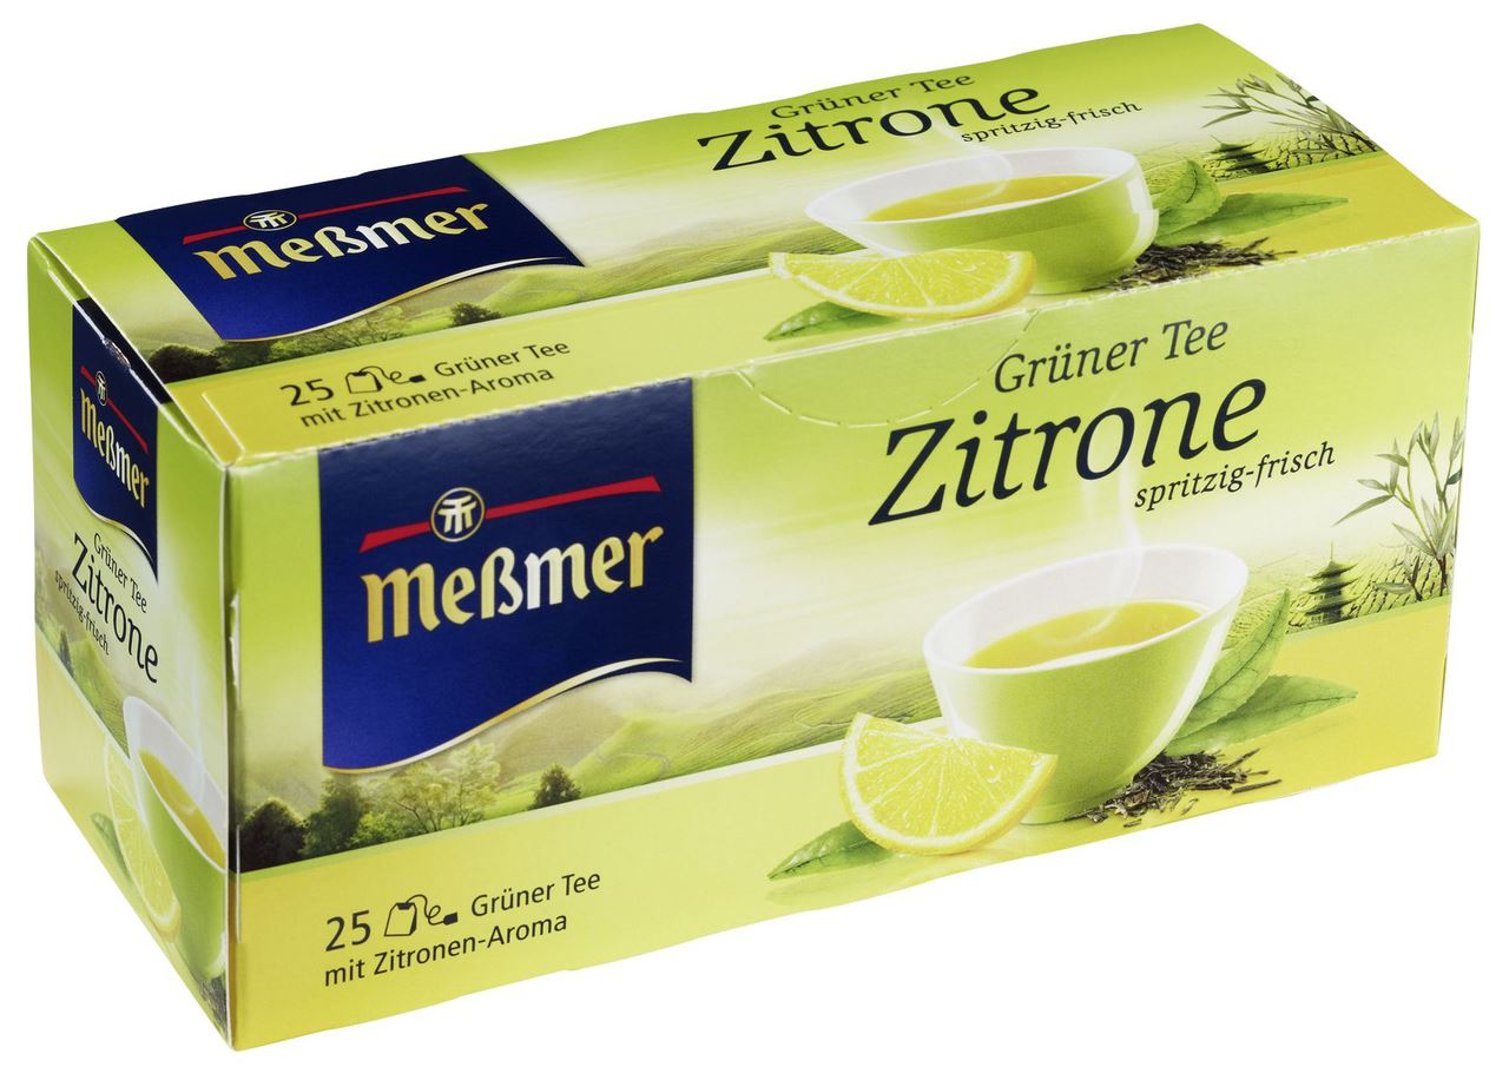 MEßMER - Grüner Tee Zitrone spritzig-frisch, 25 Teebeutel - 12 x 44 g Karton